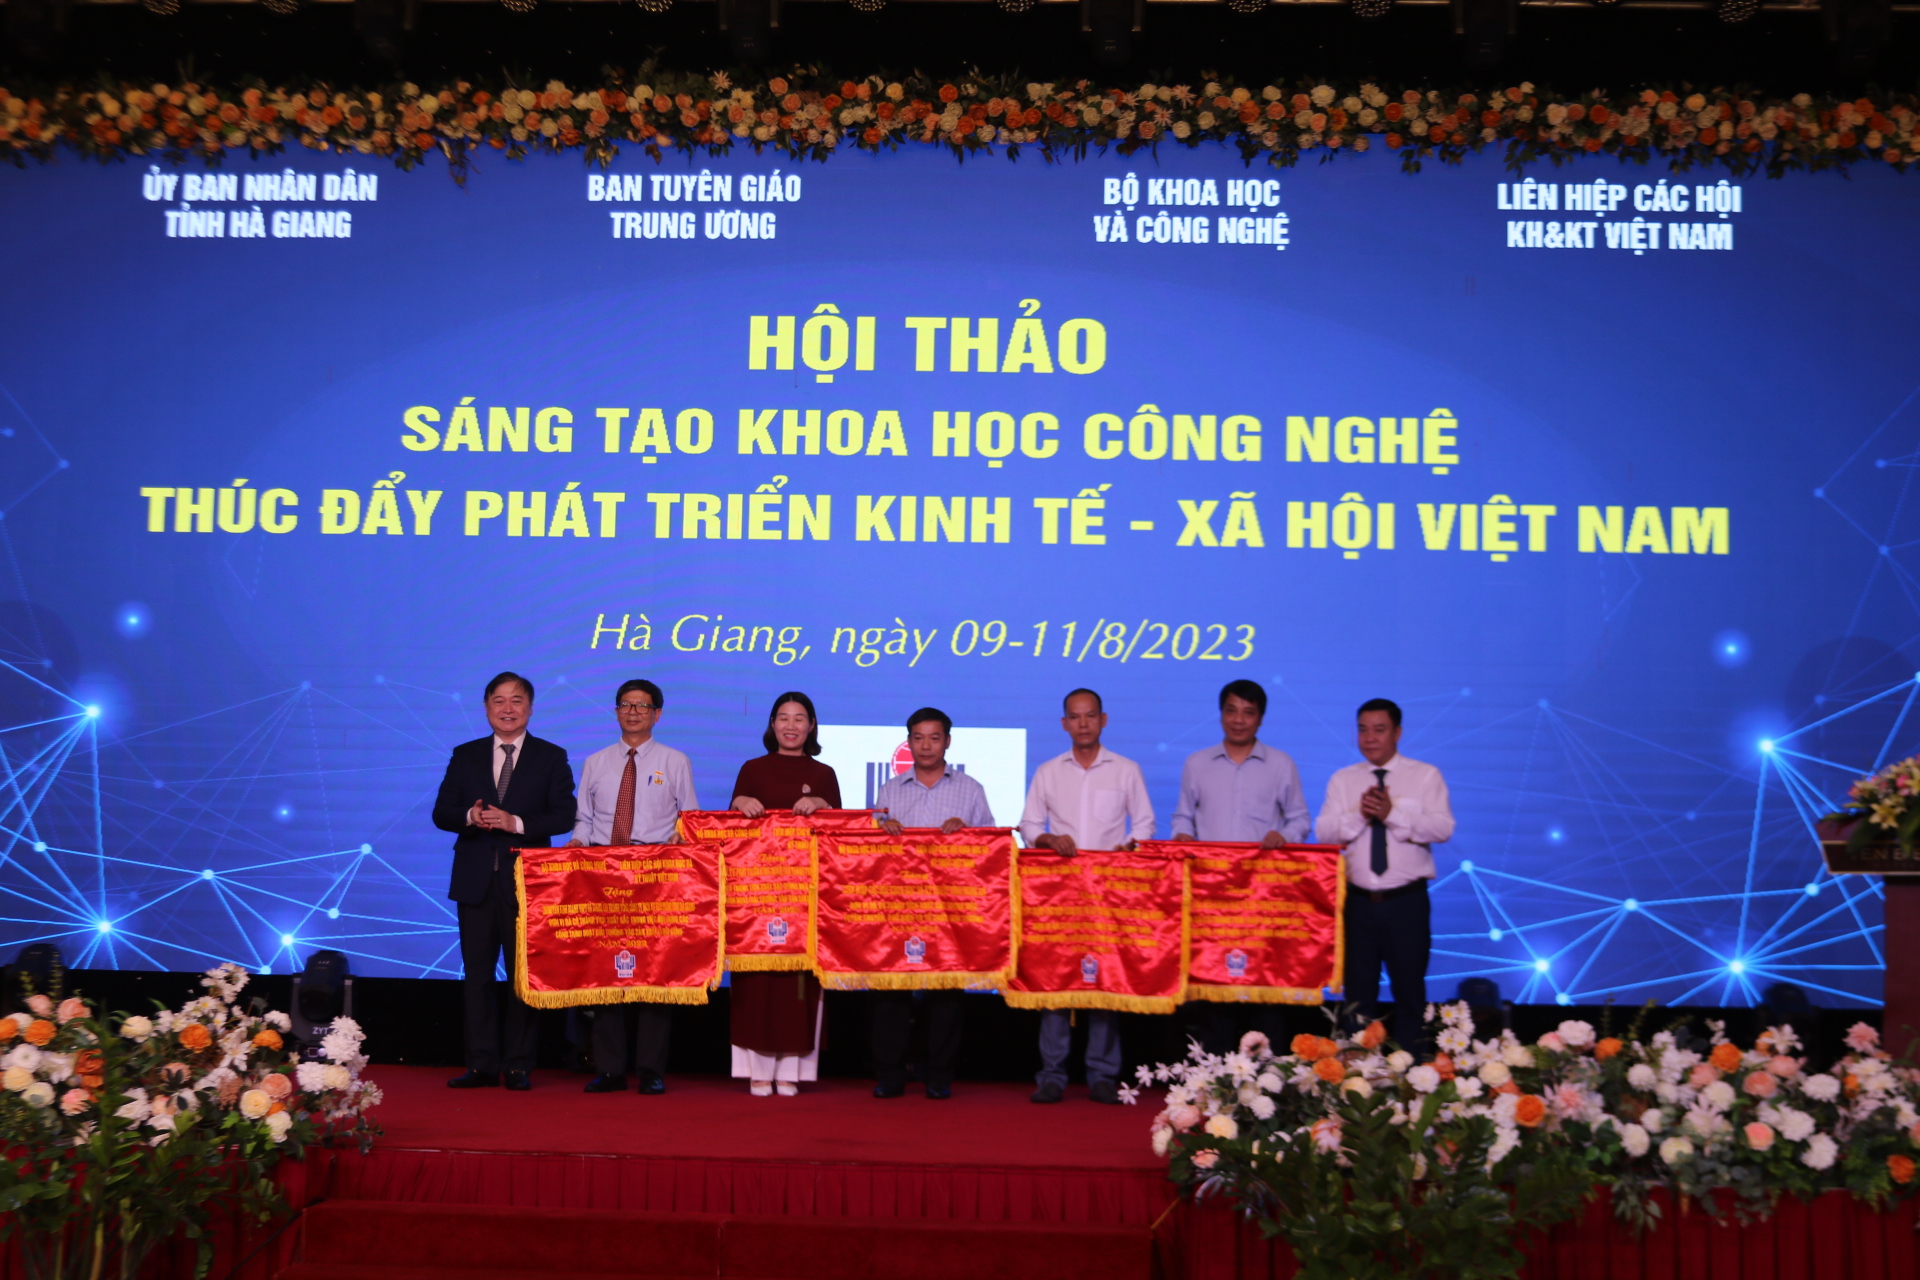 Sáng tạo khoa học công nghệ thúc đẩy phát triển kinh tế - xã hội Việt Nam - Ảnh 7.